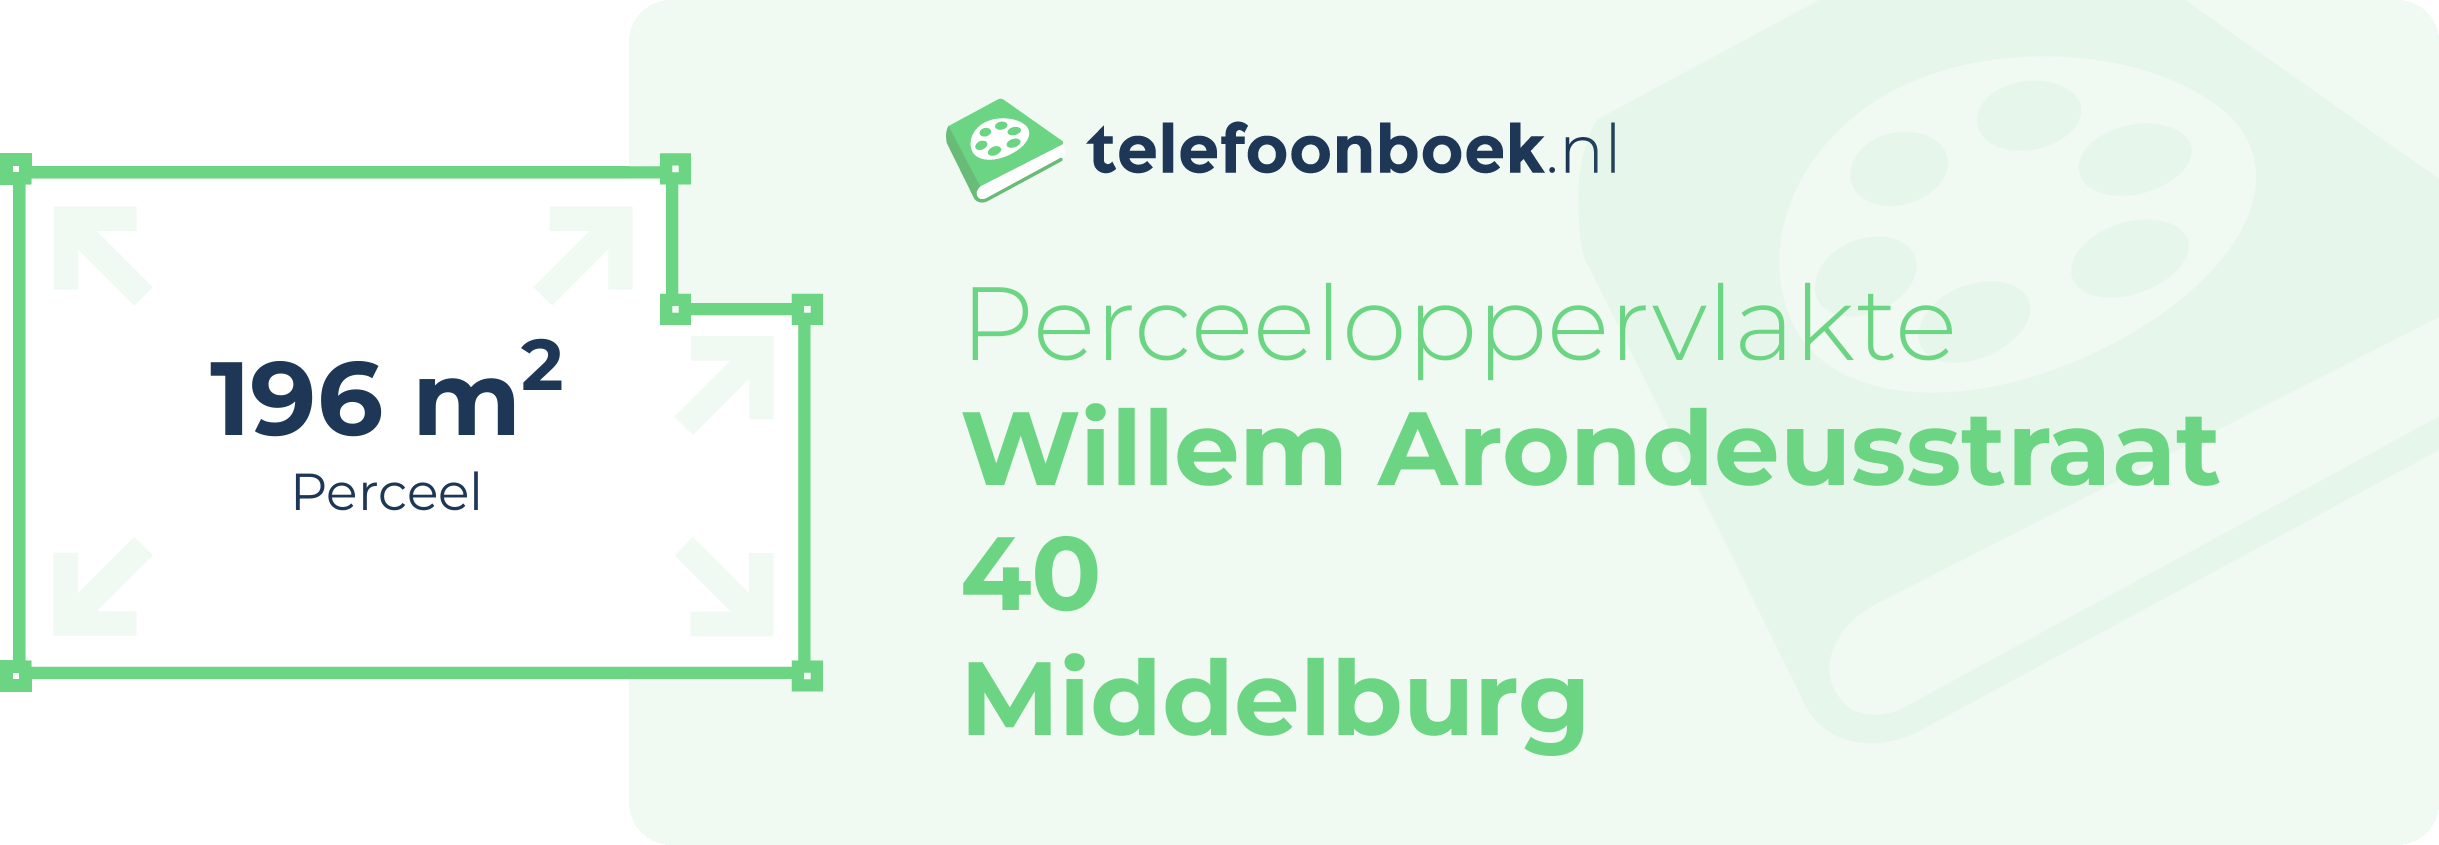 Perceeloppervlakte Willem Arondeusstraat 40 Middelburg